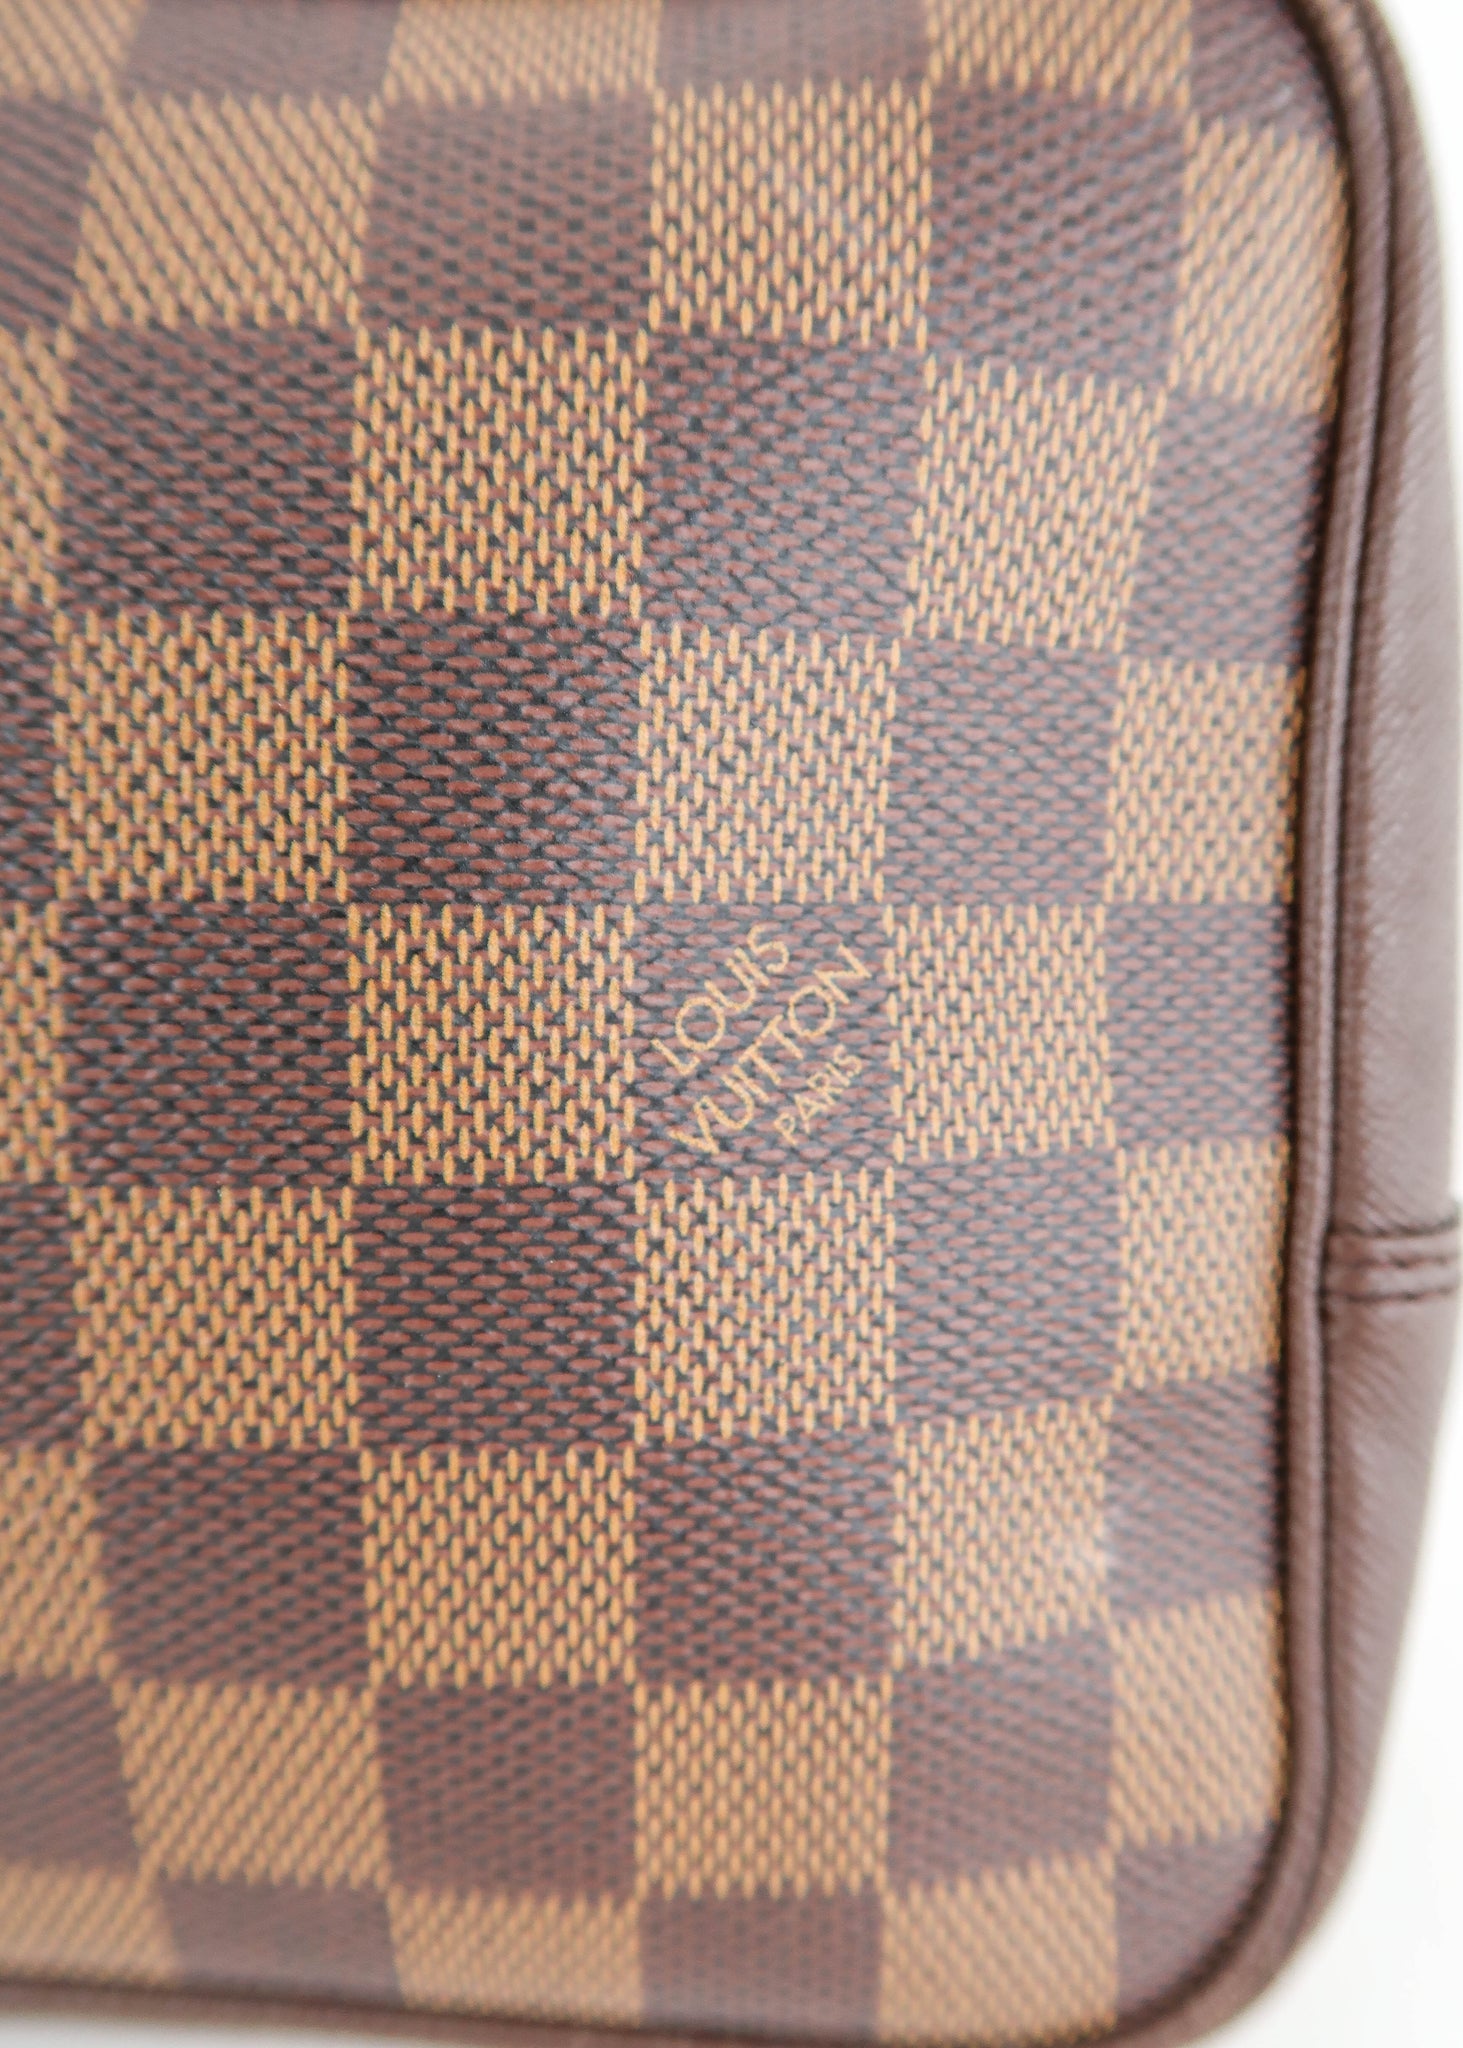 Shop for Louis Vuitton Damier Ebene Canvas Leather Trousse